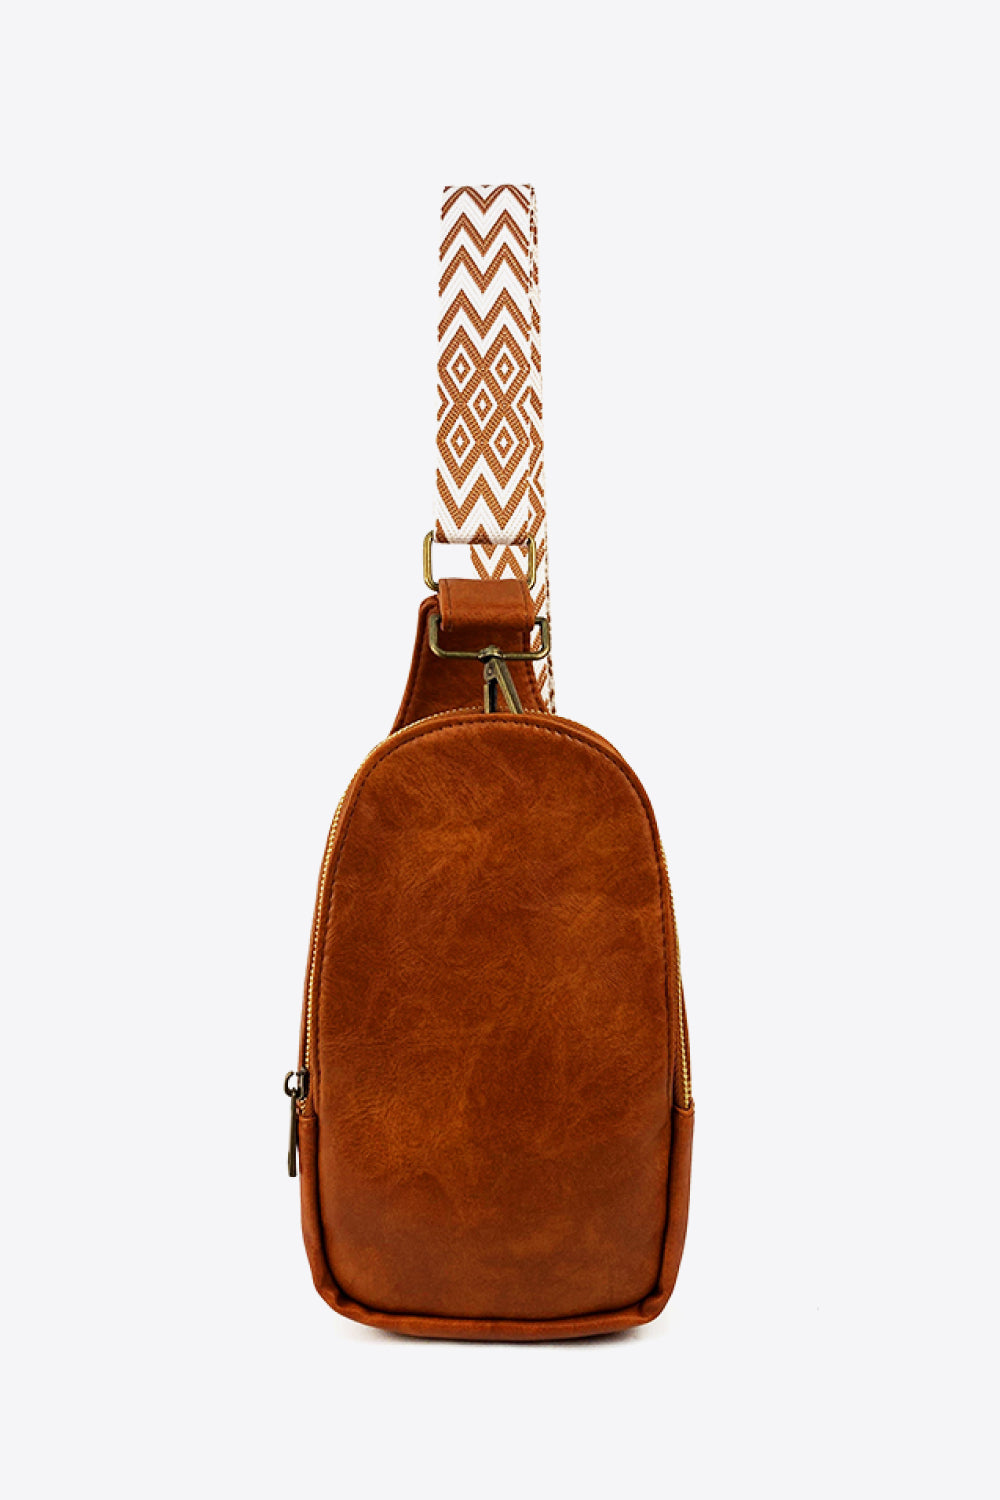 Uylee’s Boutique Random Pattern Adjustable Strap PU Leather Sling Bag